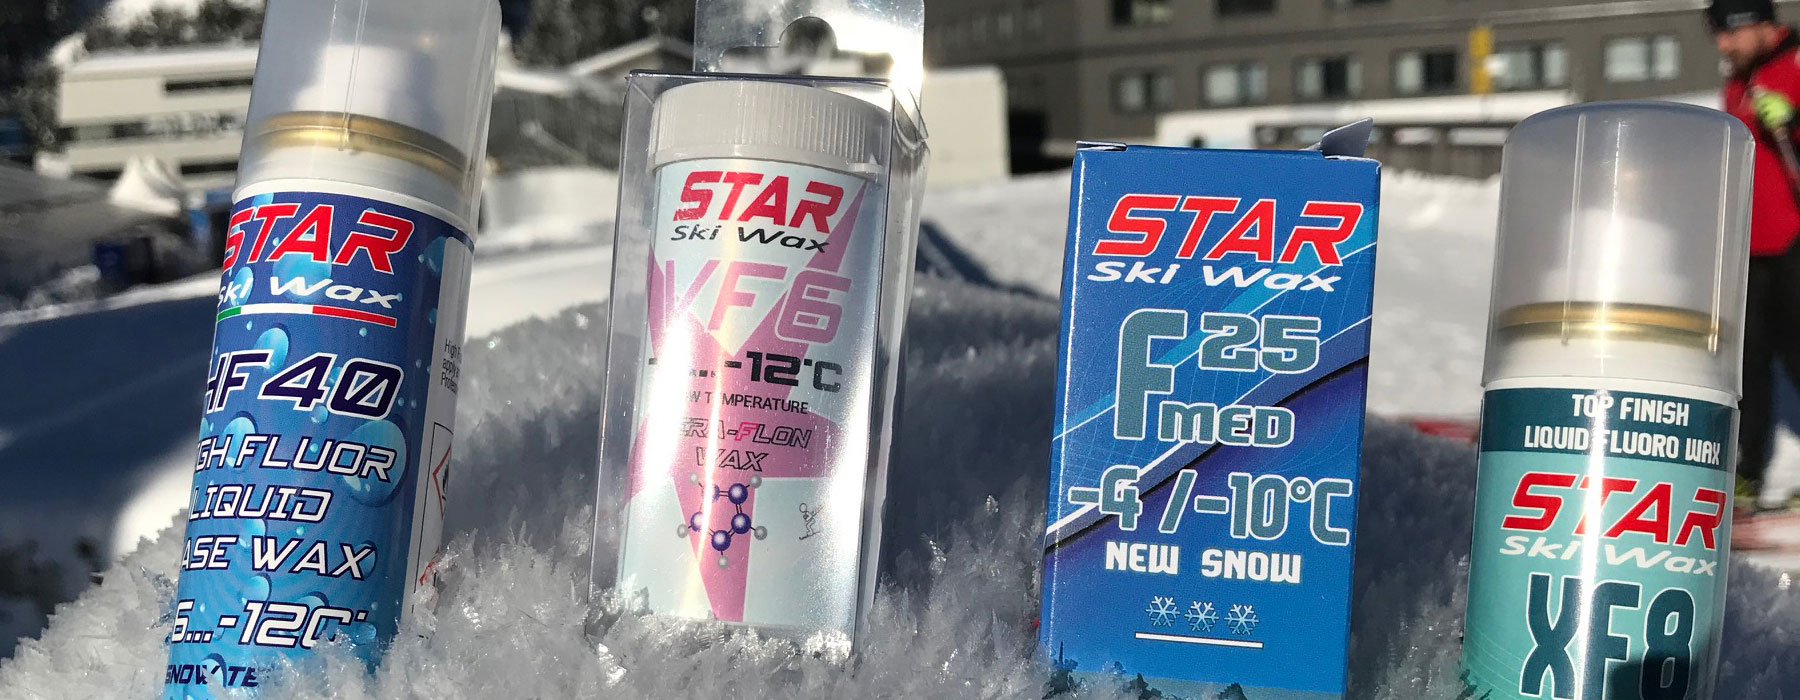 Star Ski Wax scioline e prodotti per la sciolinatura